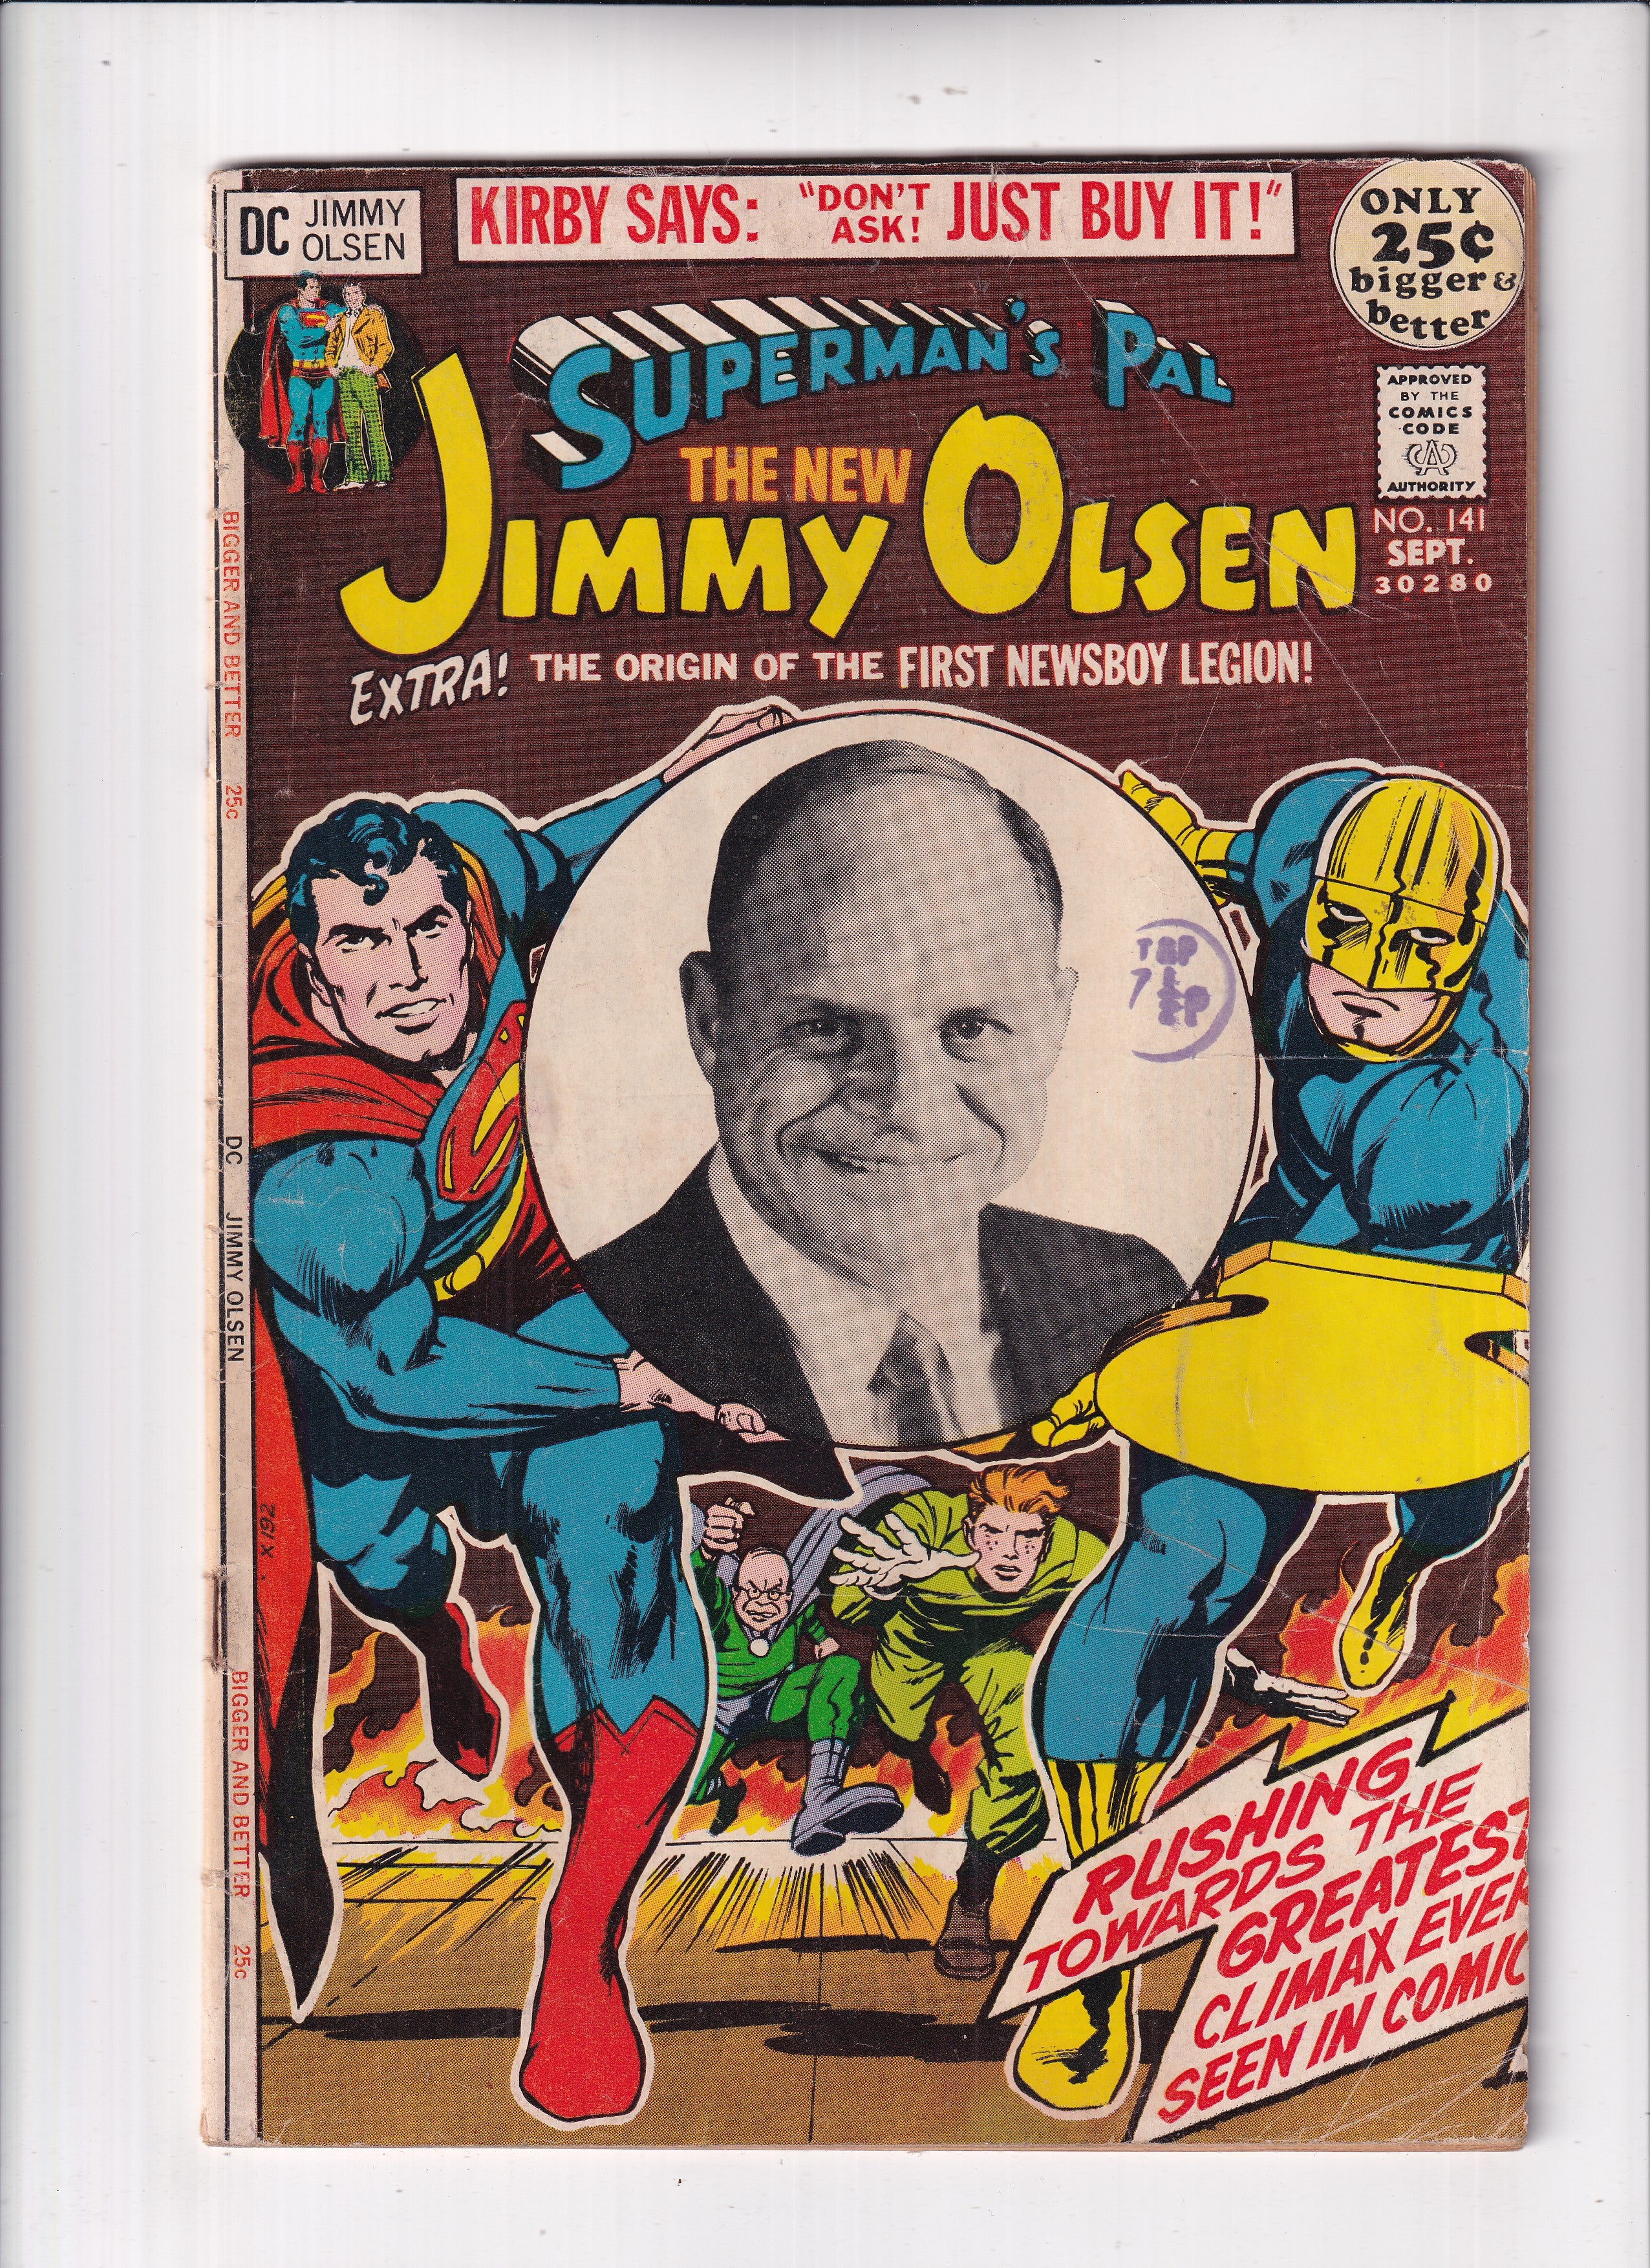 SUPERMAN'S PAL JIMMY OLSEN #141 - Slab City Comics 